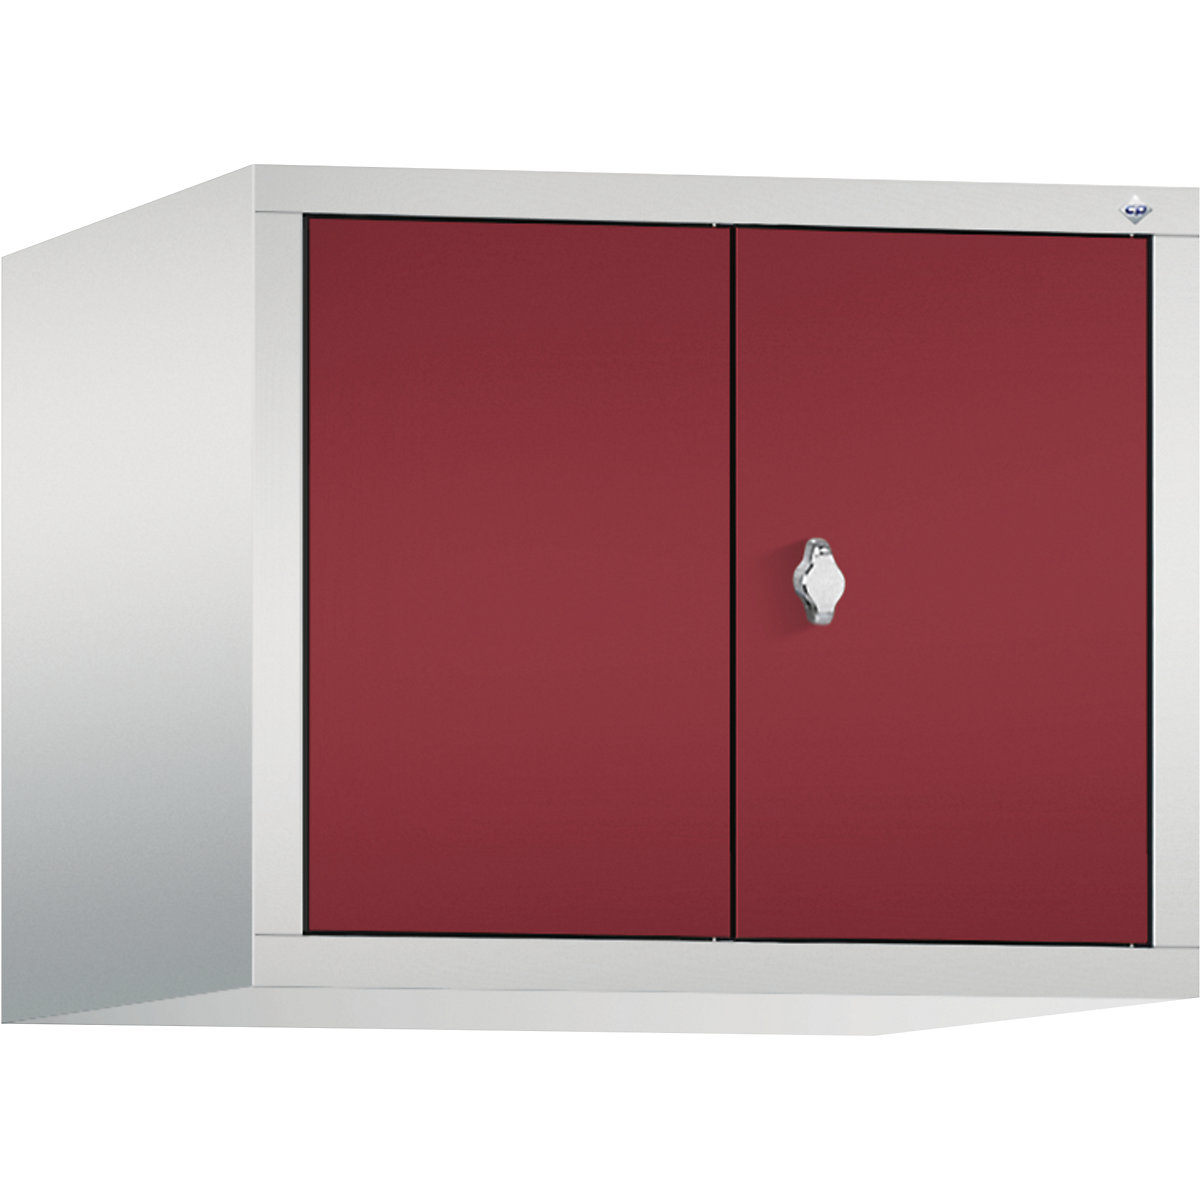 C+P – Altillo CLASSIC, puertas batientes que cierran al ras entre sí, 2 compartimentos, anchura de compartimento 300 mm, gris luminoso / rojo rubí